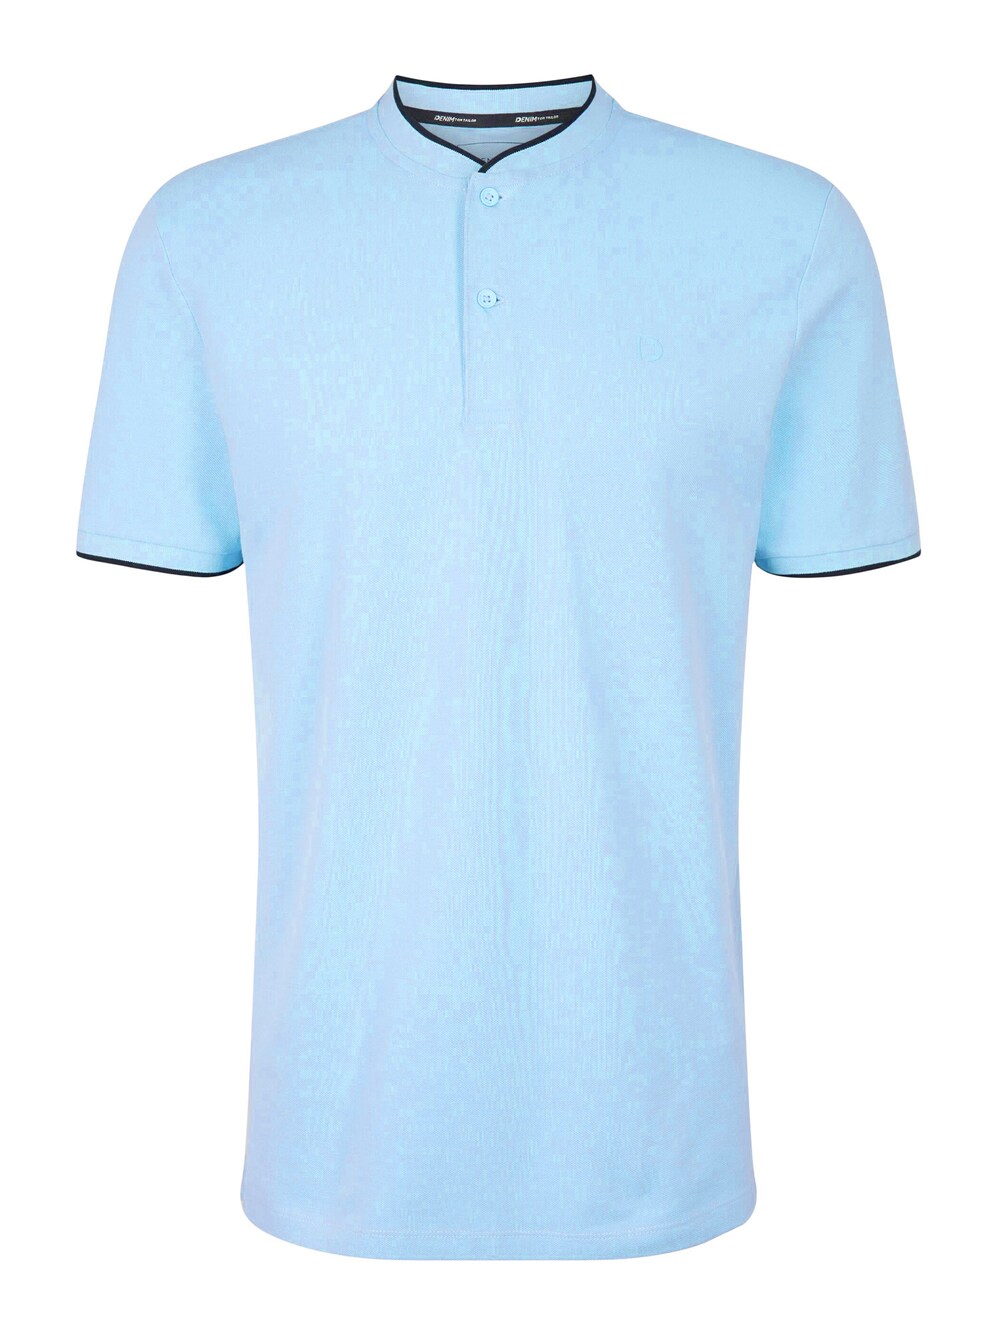 Футболка TOM TAILOR DENIM, темно-синий/светло-голубой футболка tom tailor размер xl голубой белый